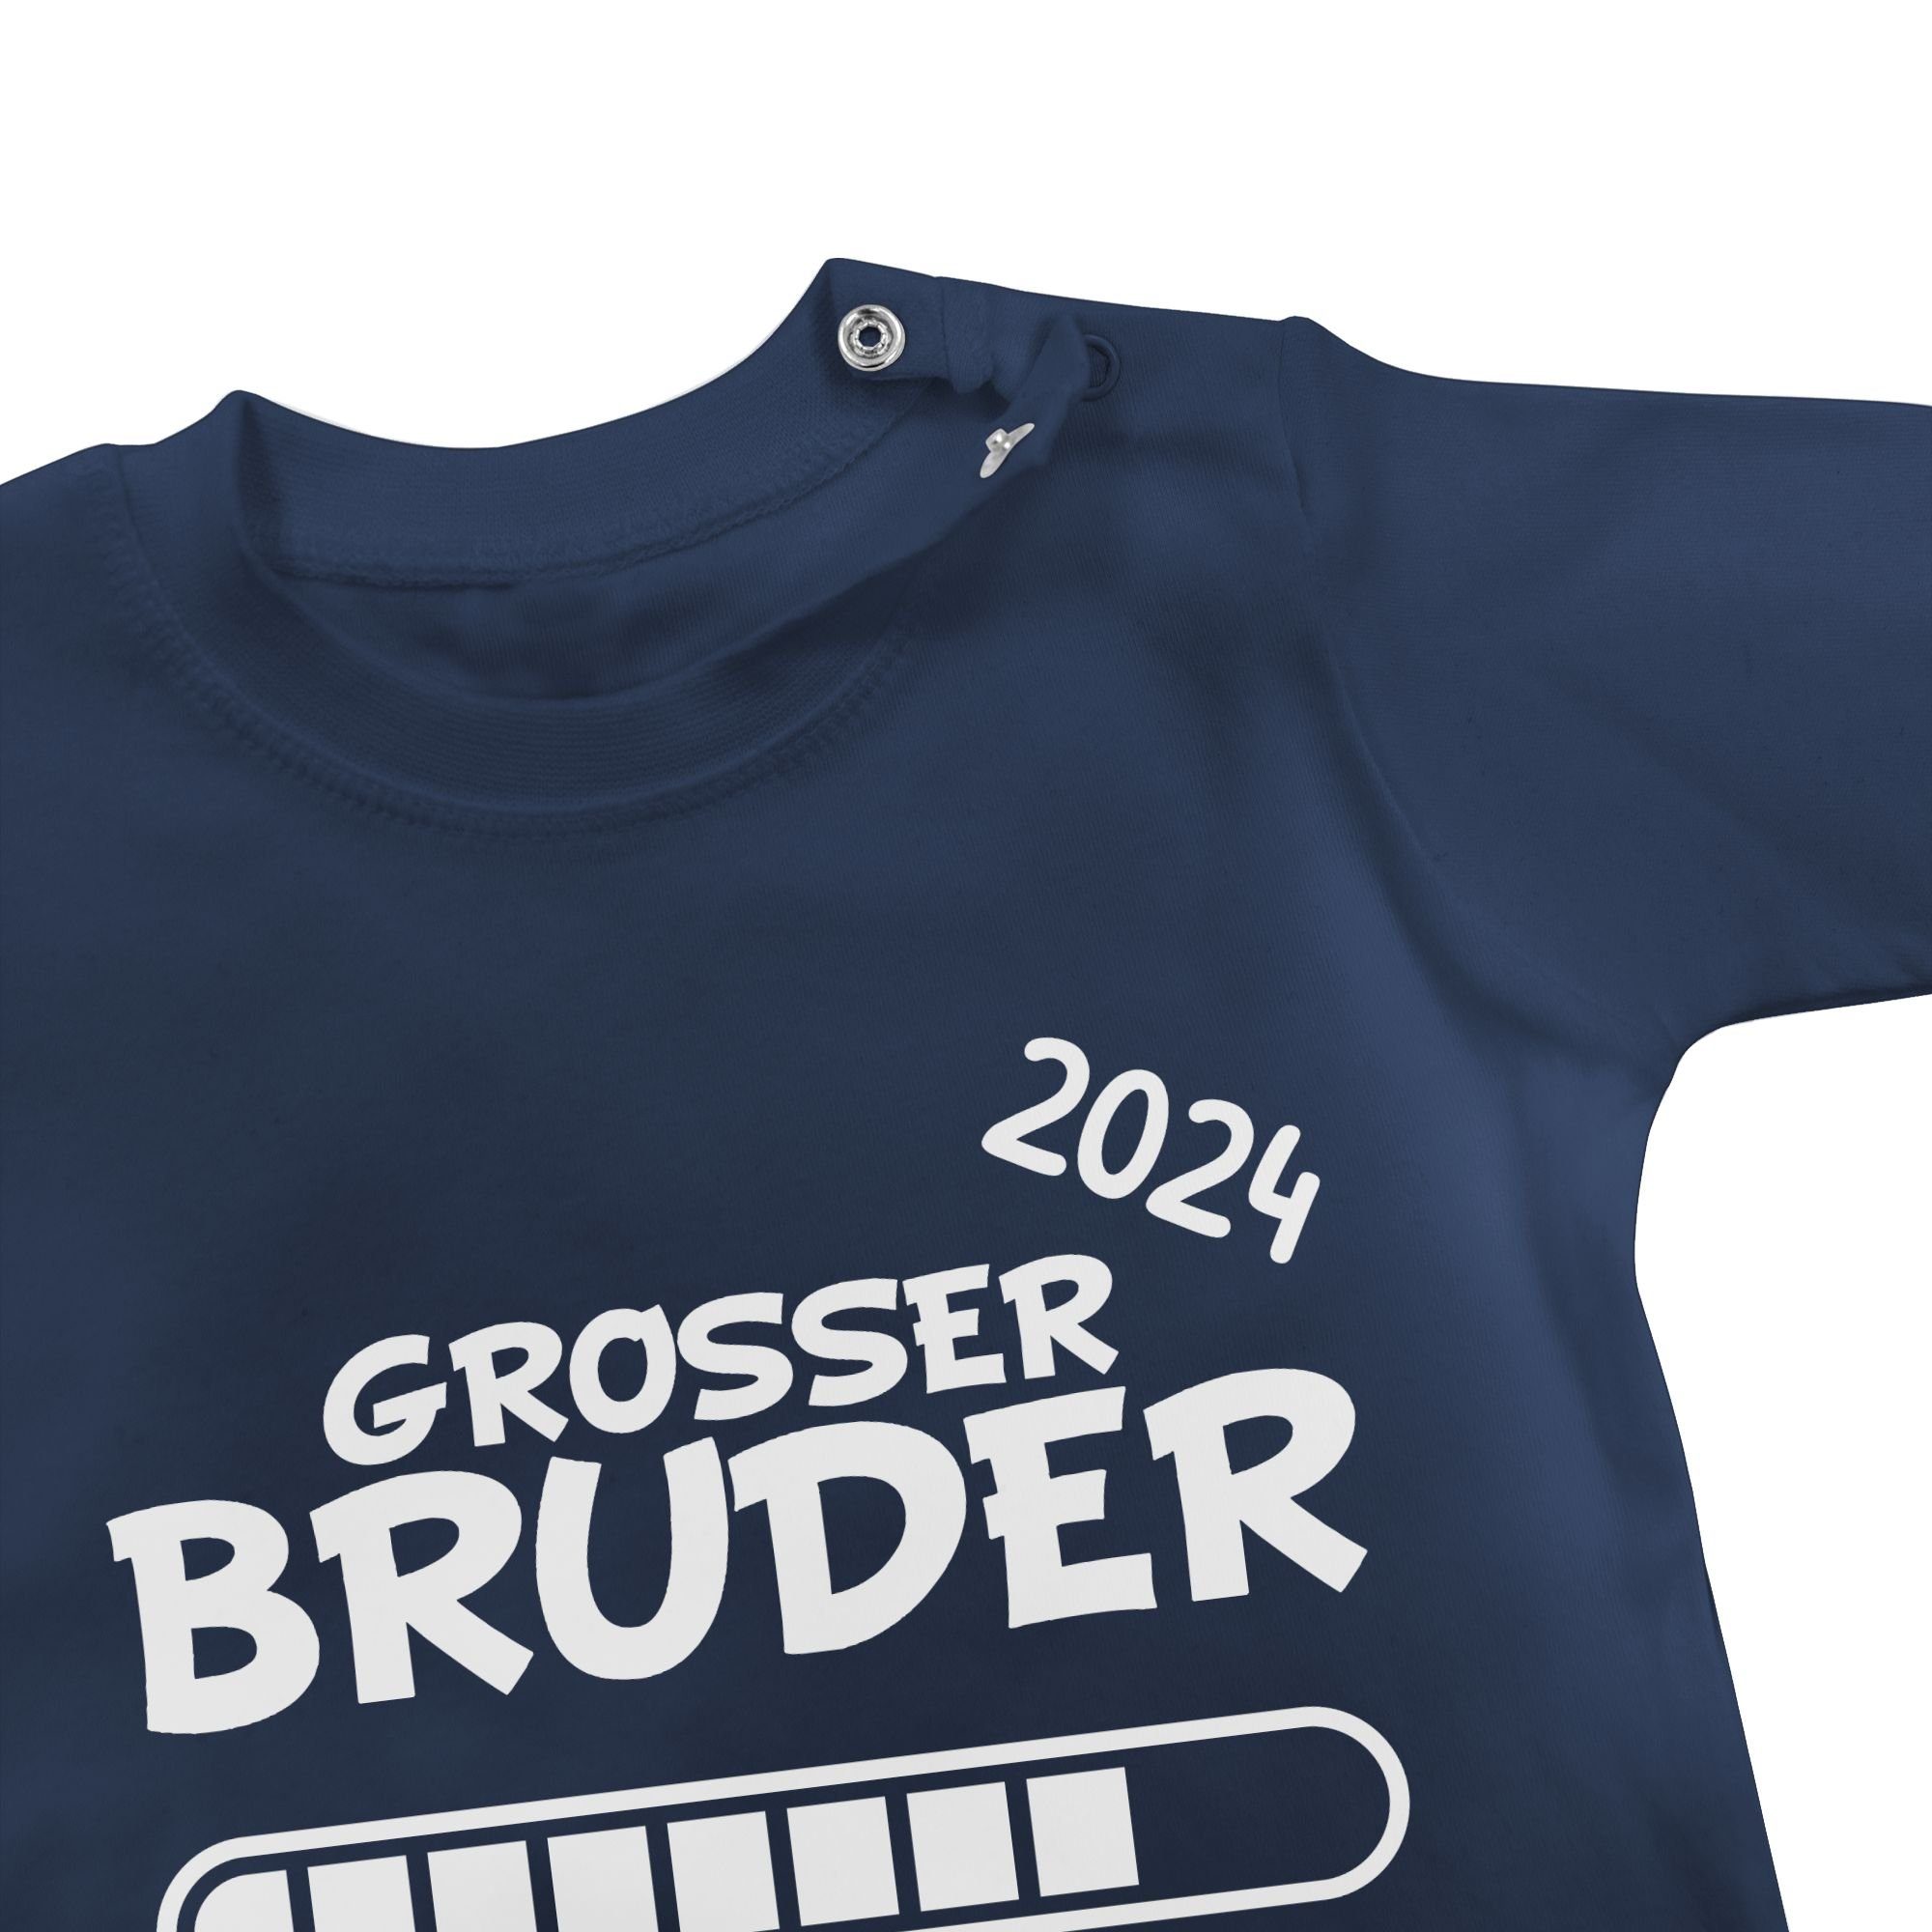 Shirtracer T-Shirt Großer Bruder loading Blau Großer Bruder Navy 1 2024